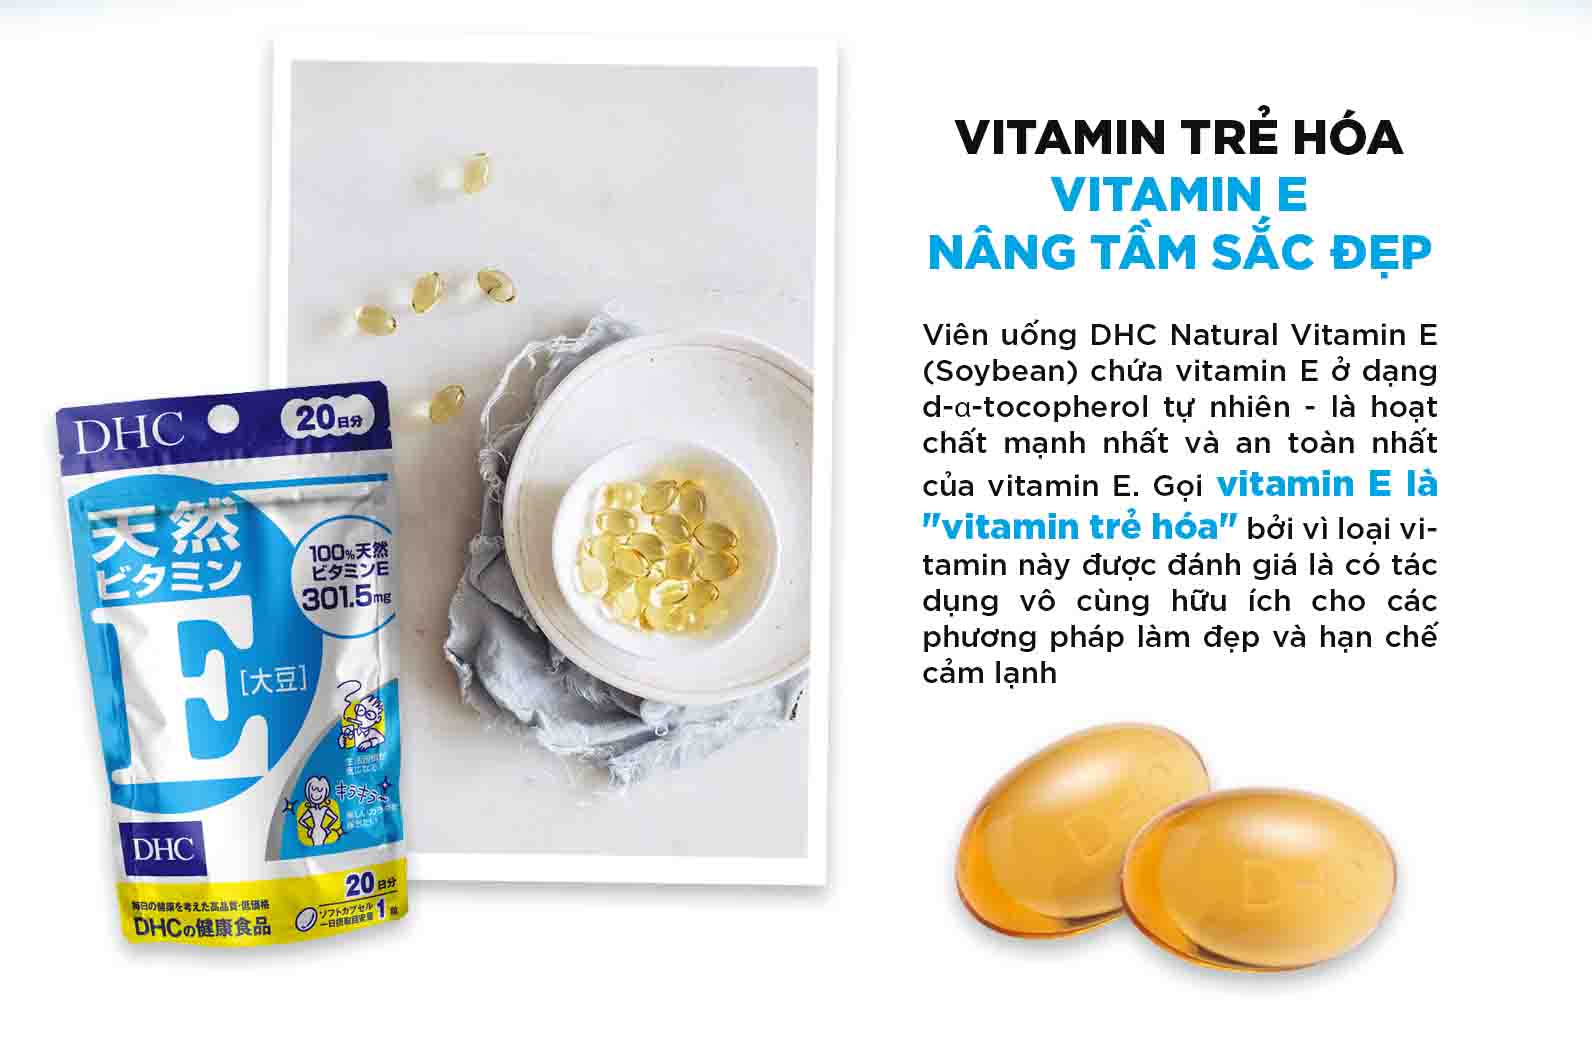 Vai trò của vitamin E trong viên uống vitamin E DHC